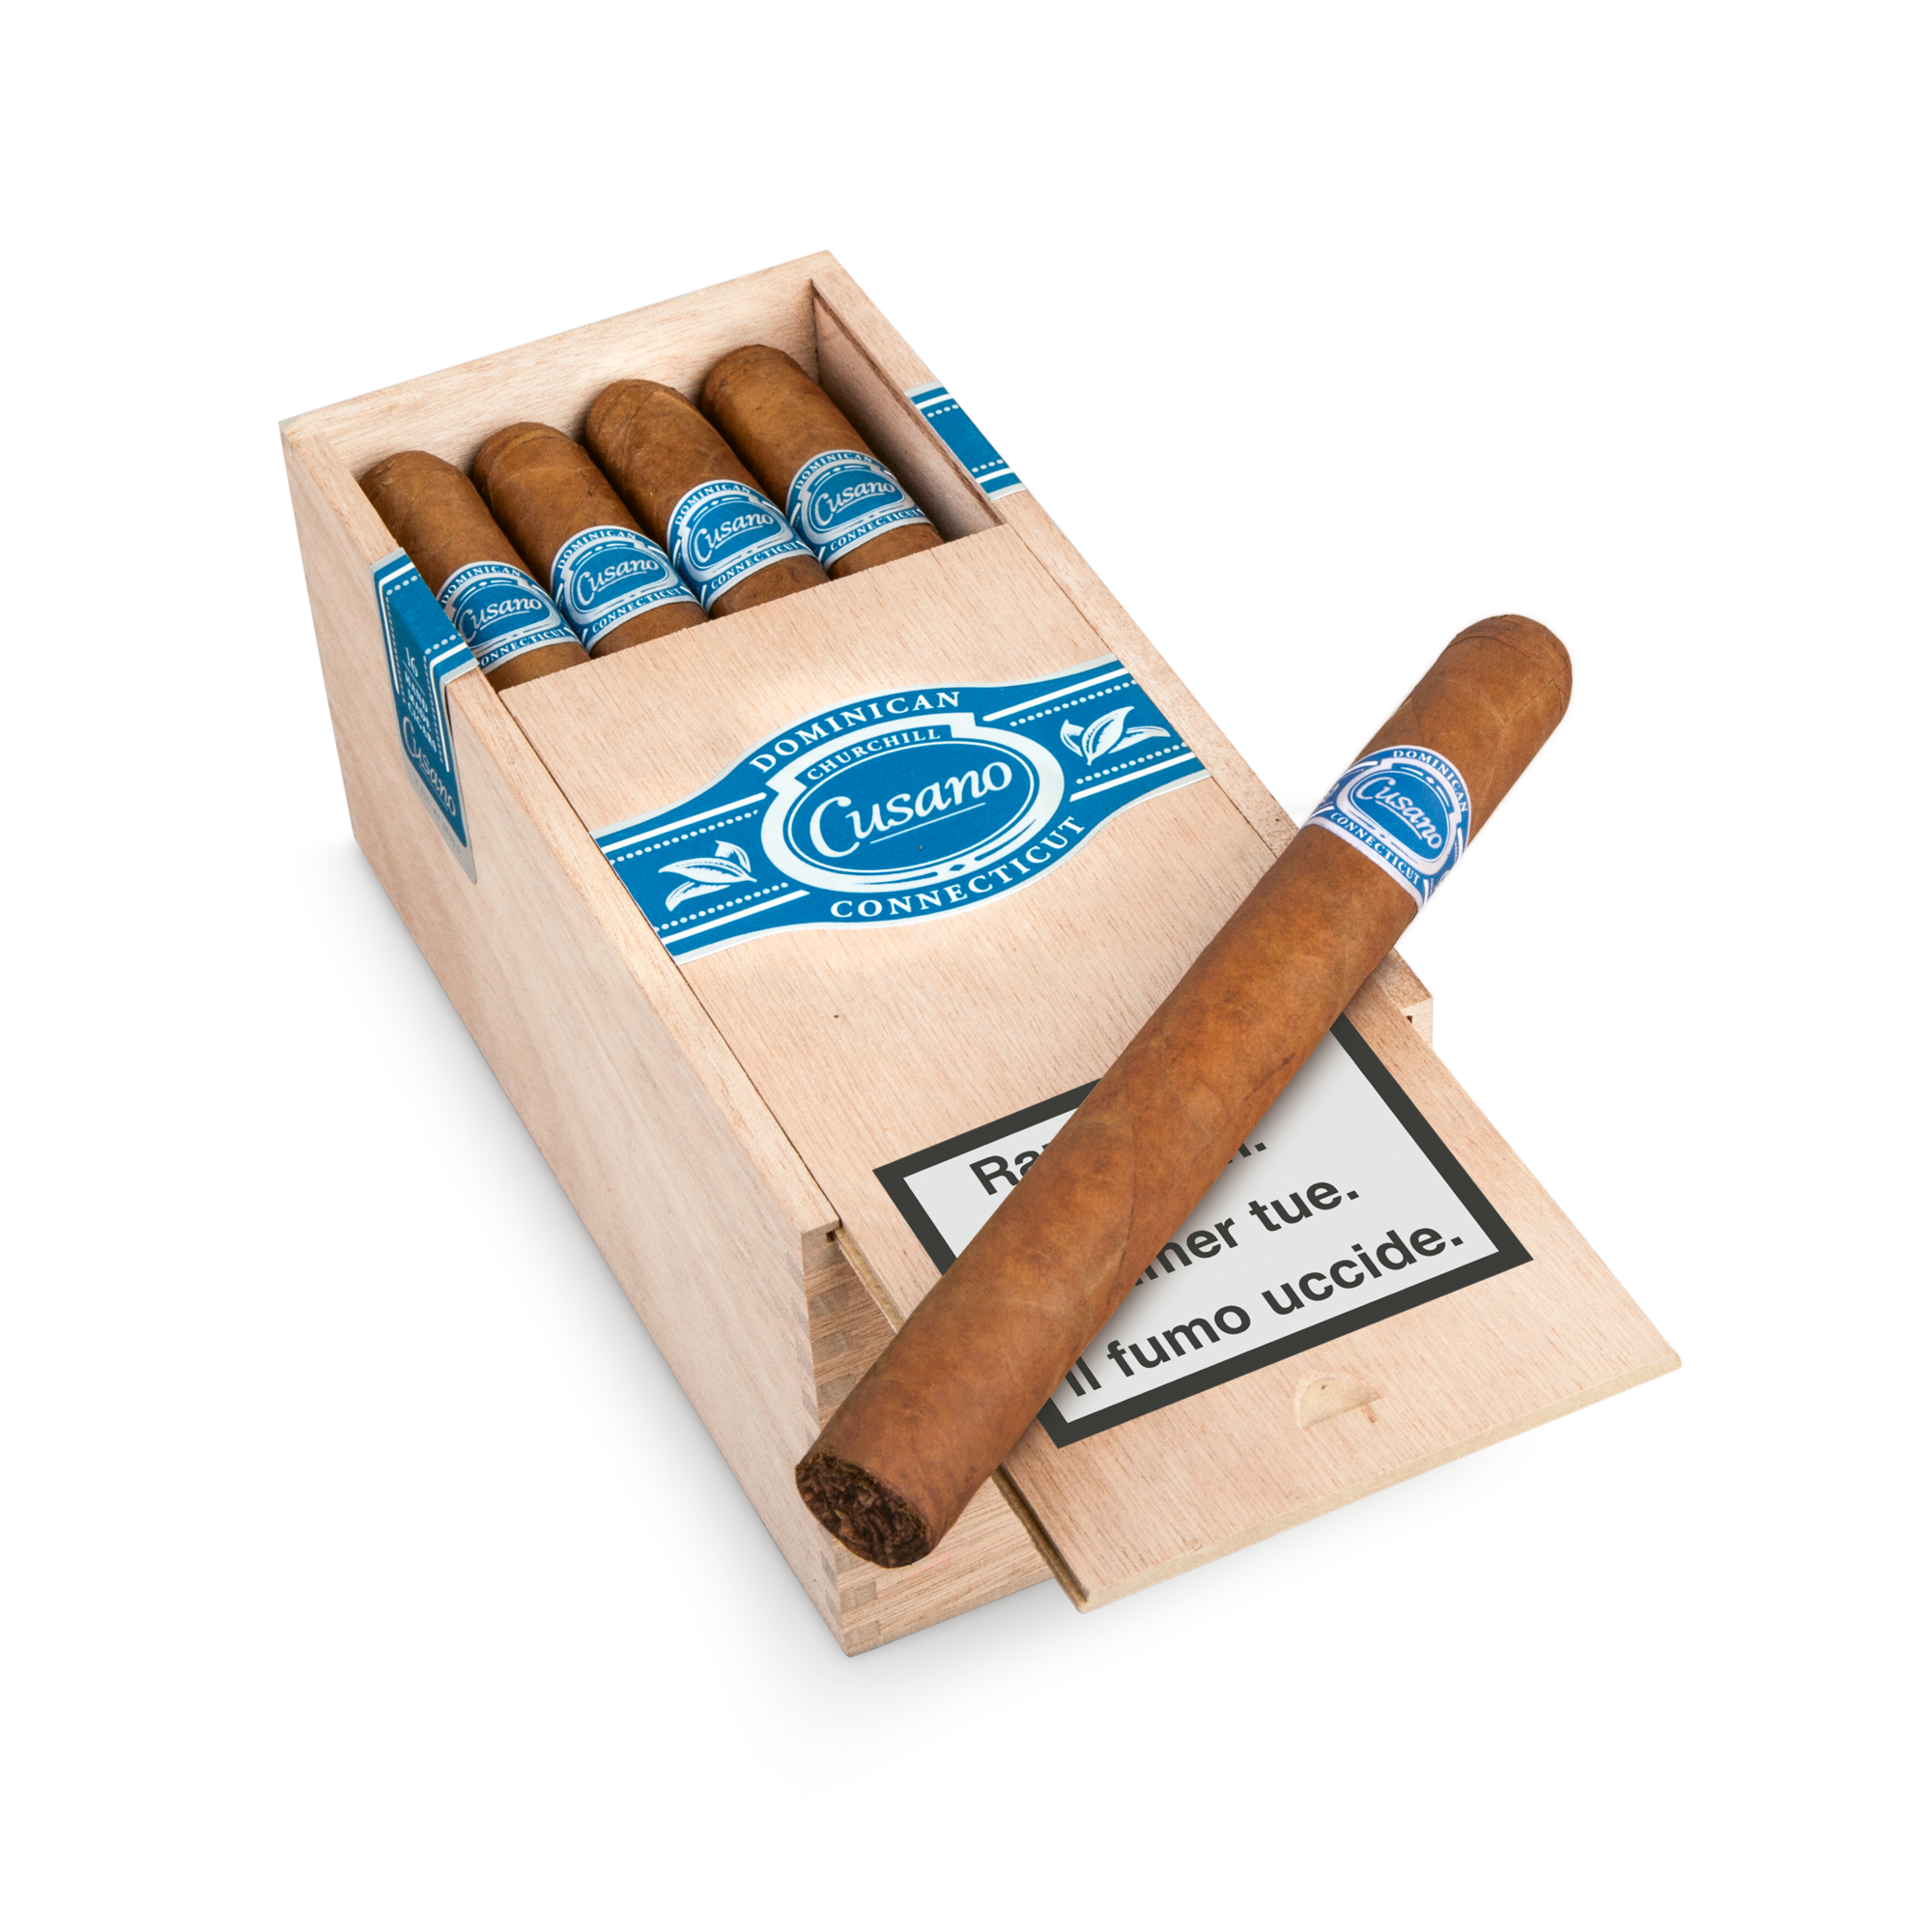 16er Kiste Cusano Dominicana Connecticut Churchill Zigarren, Box geöffnet